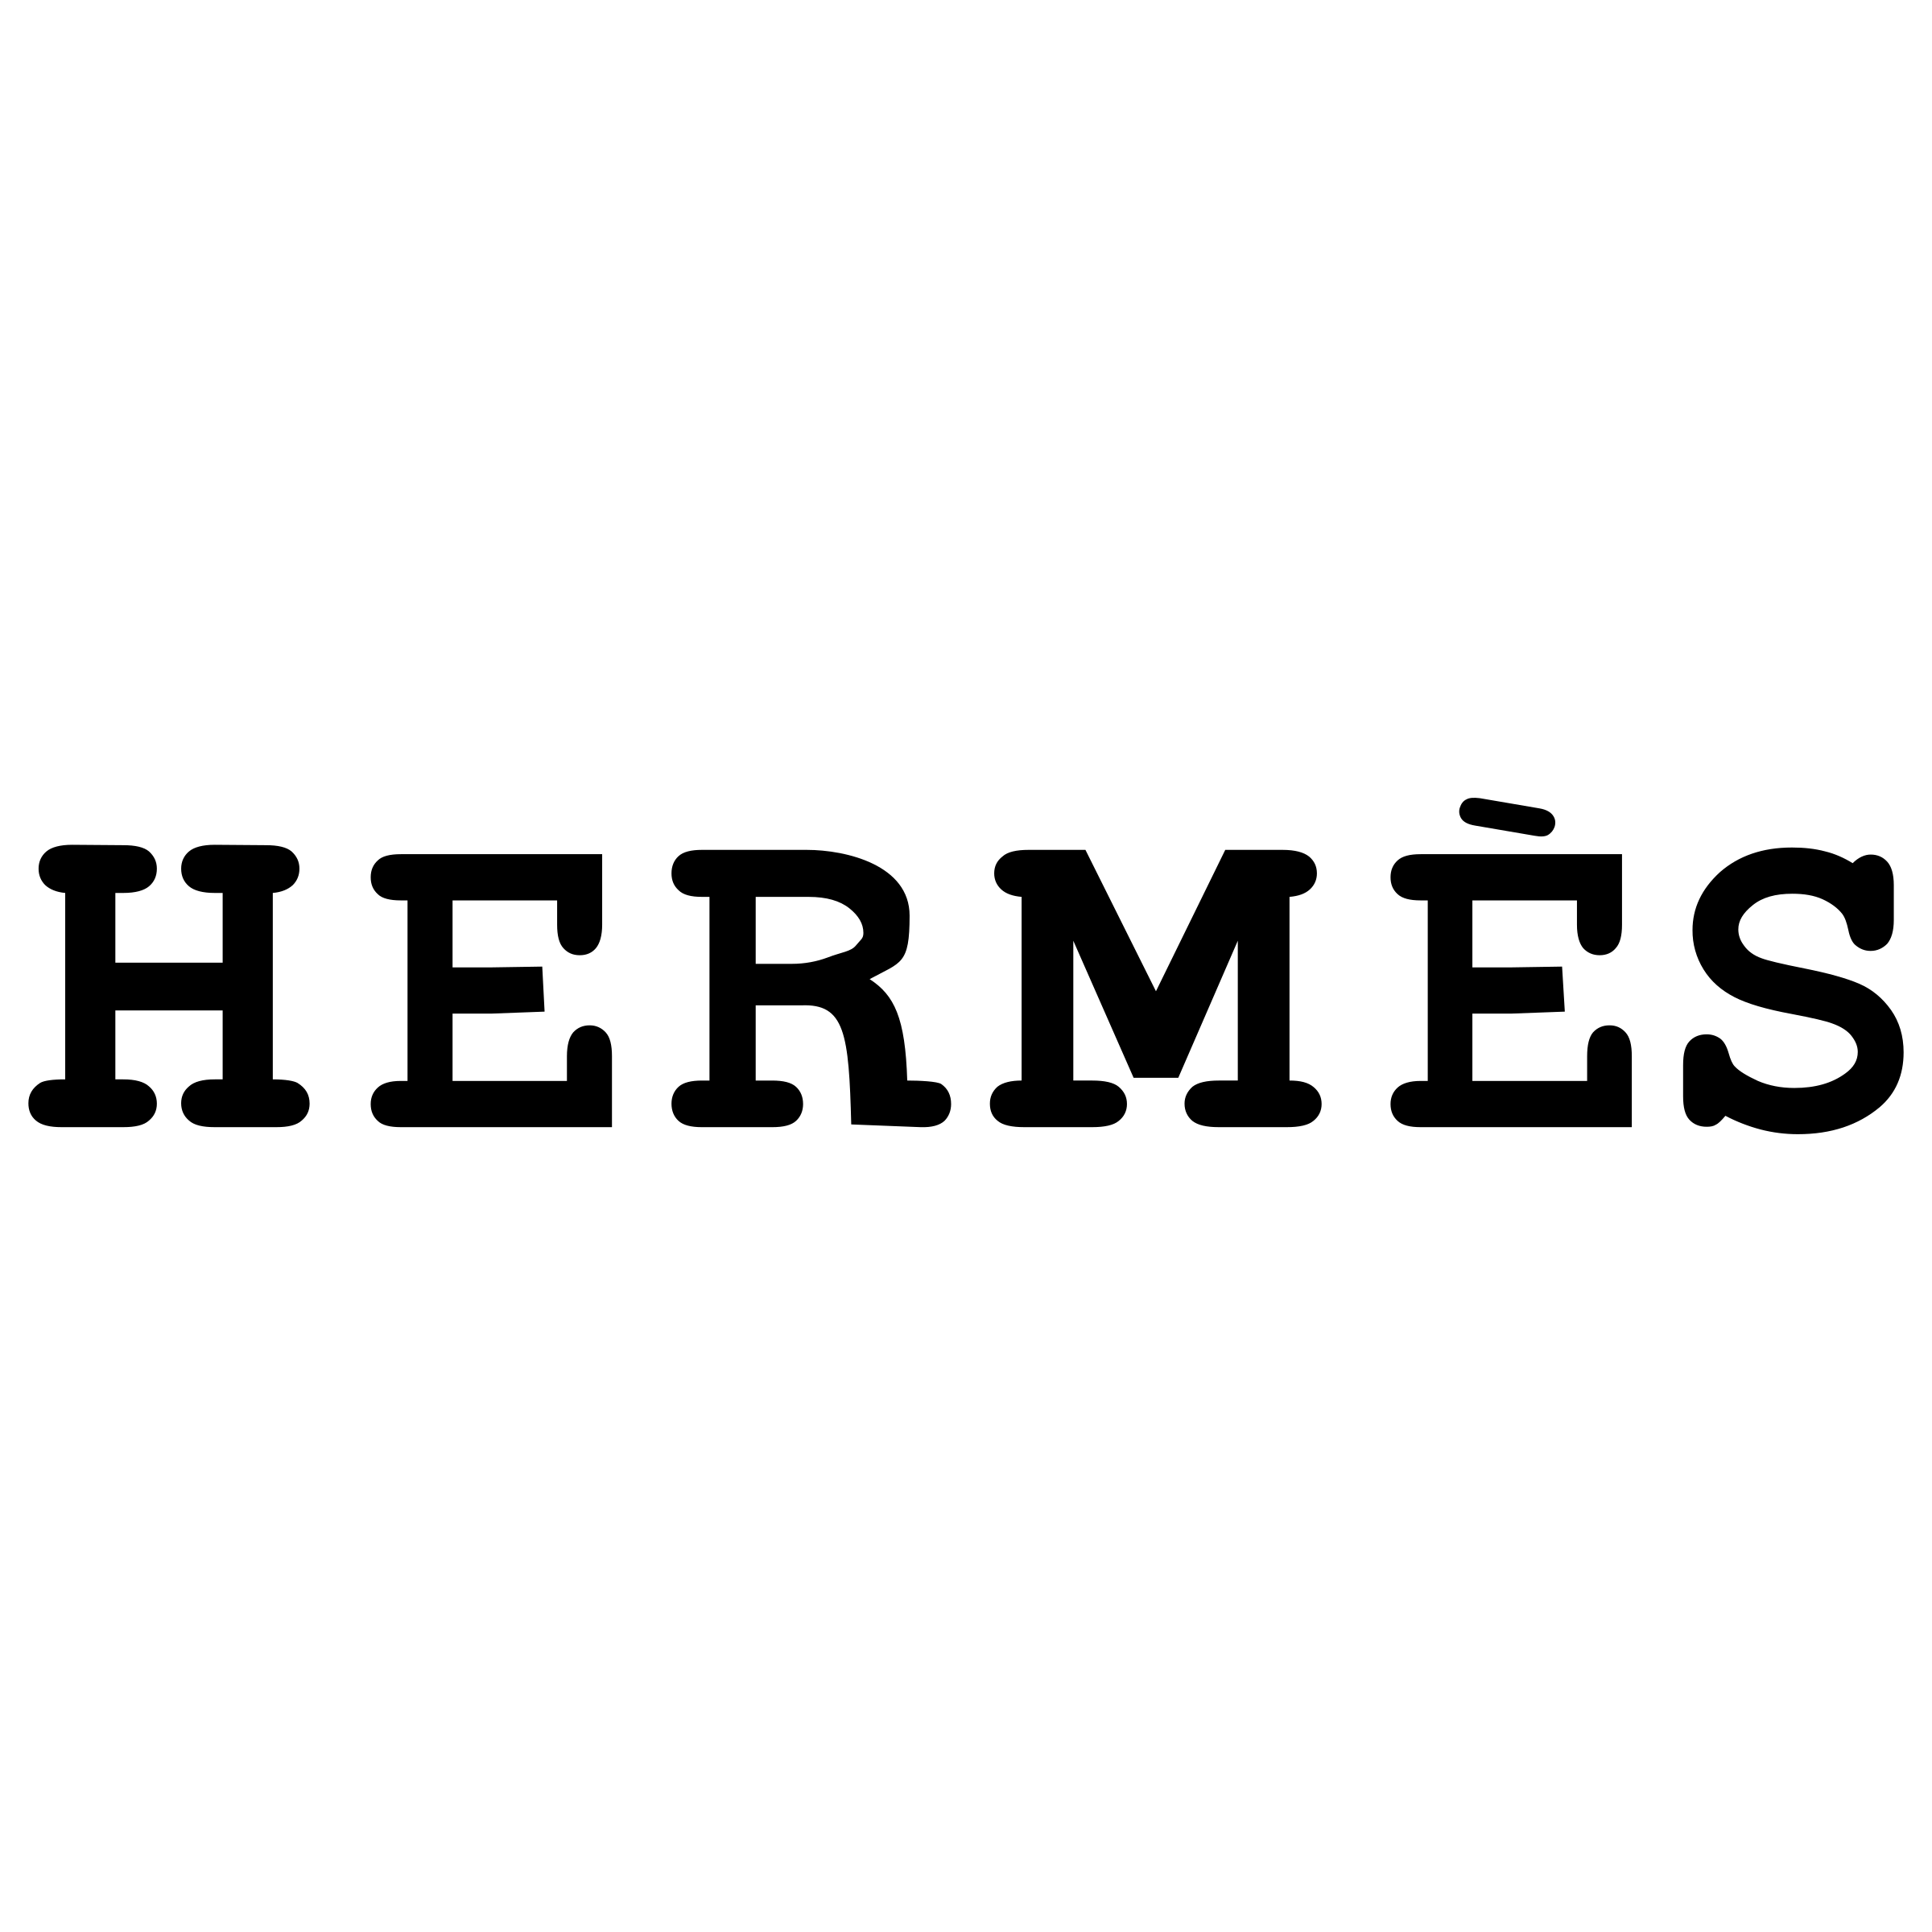 Hermes Transparent Logo - Hermes Logo PNG Transparent & SVG Vector - Freebie Supply